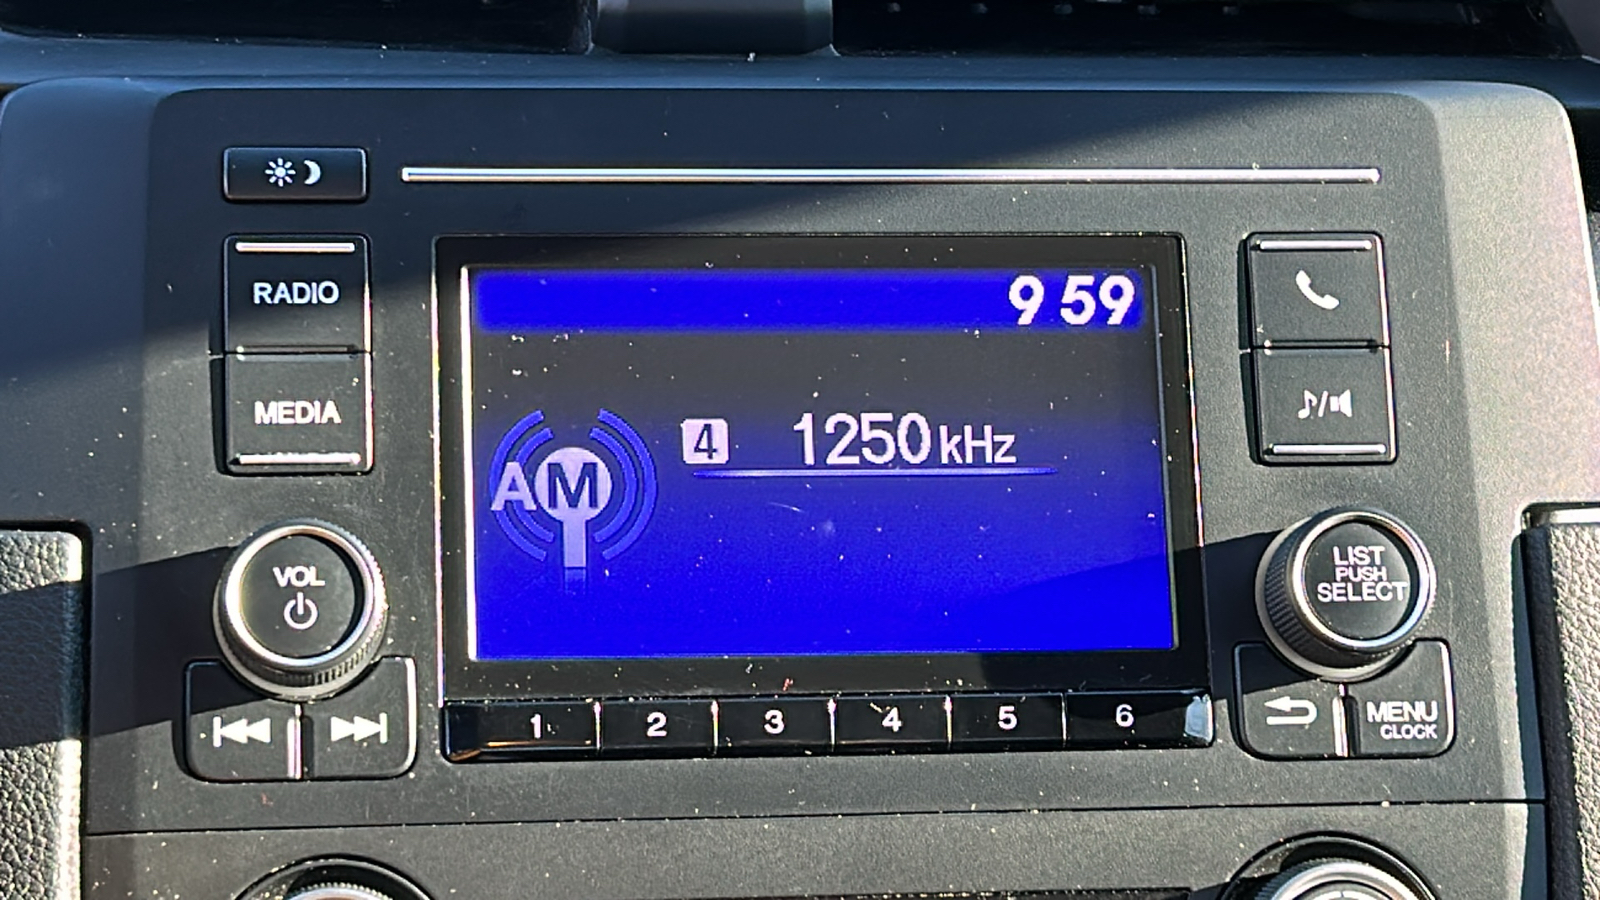 2019 Honda Civic LX 17